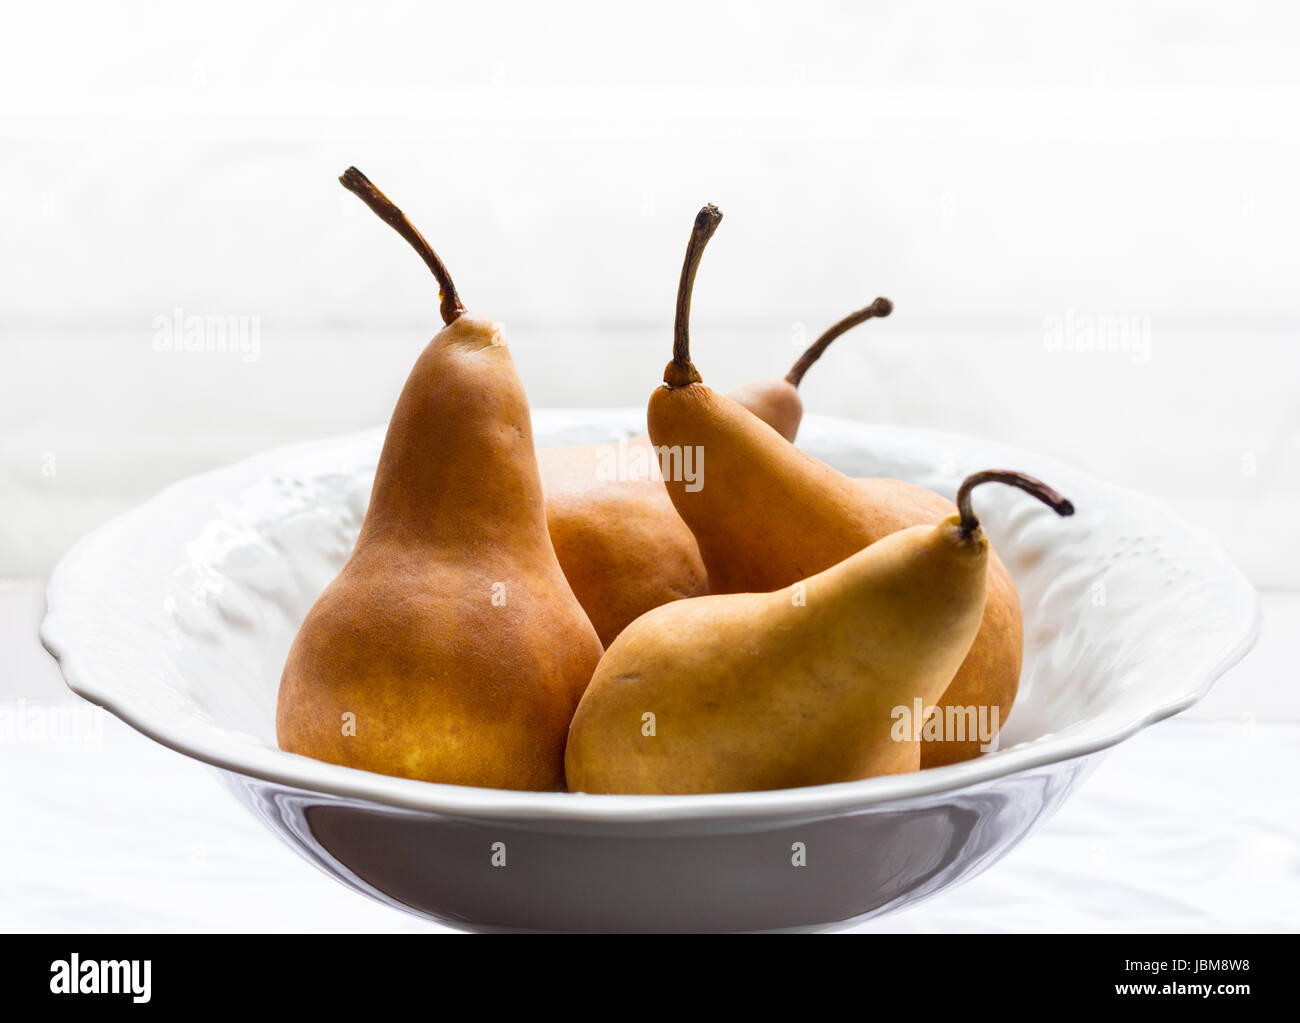 Golden pears in white porcelain bowl. High key lighting. Horizontal format. Stock Photo